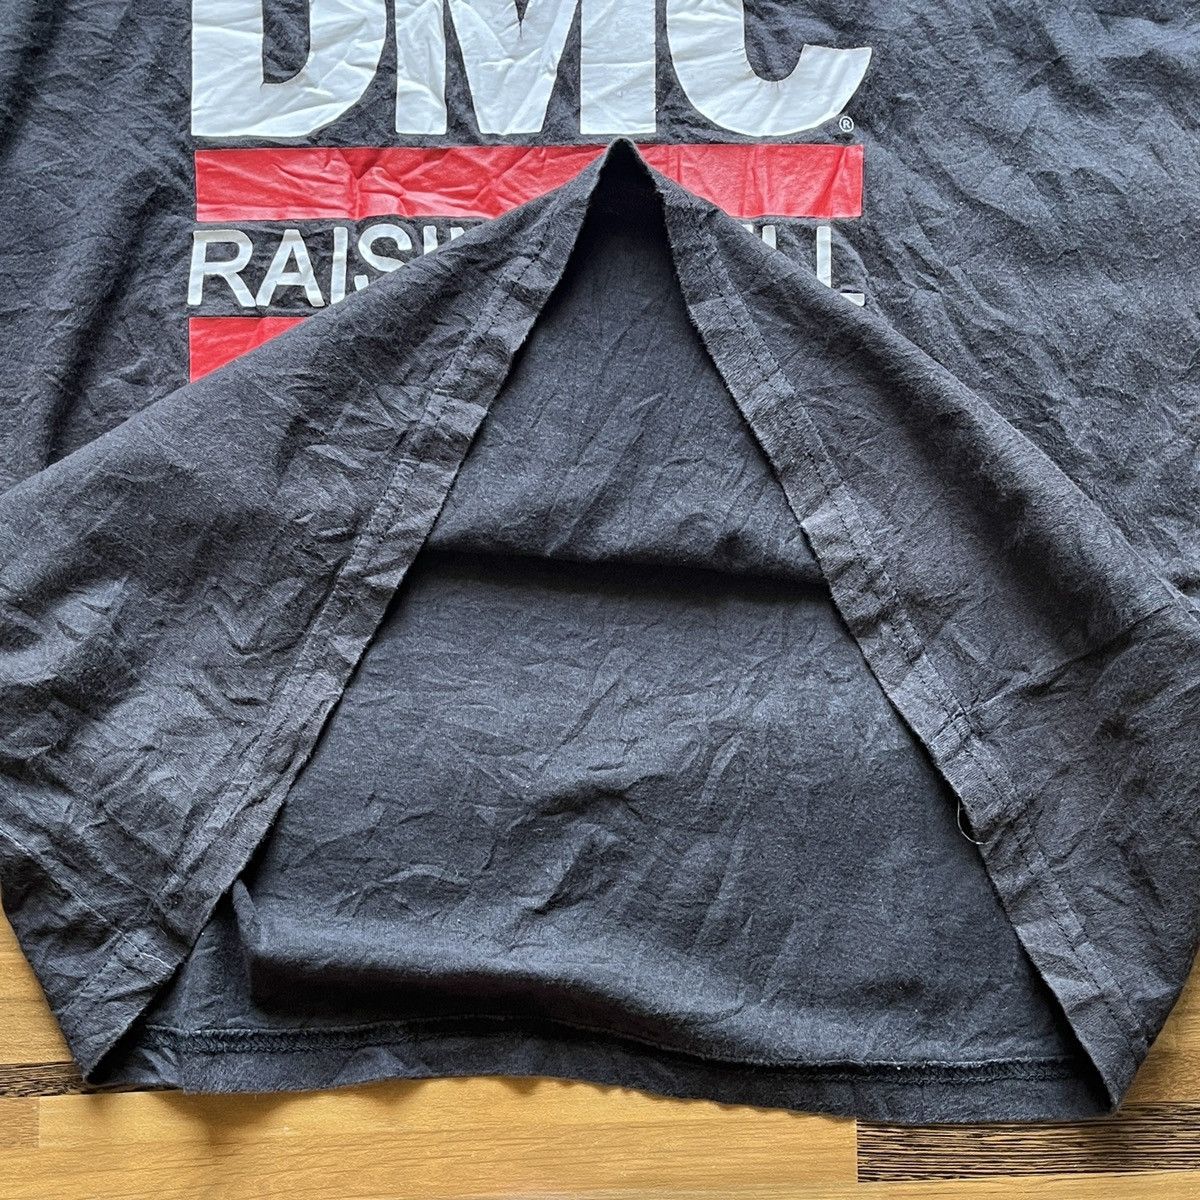 RUN DMC Raising Hell Rap Tees Black Copyright 2015 - 8